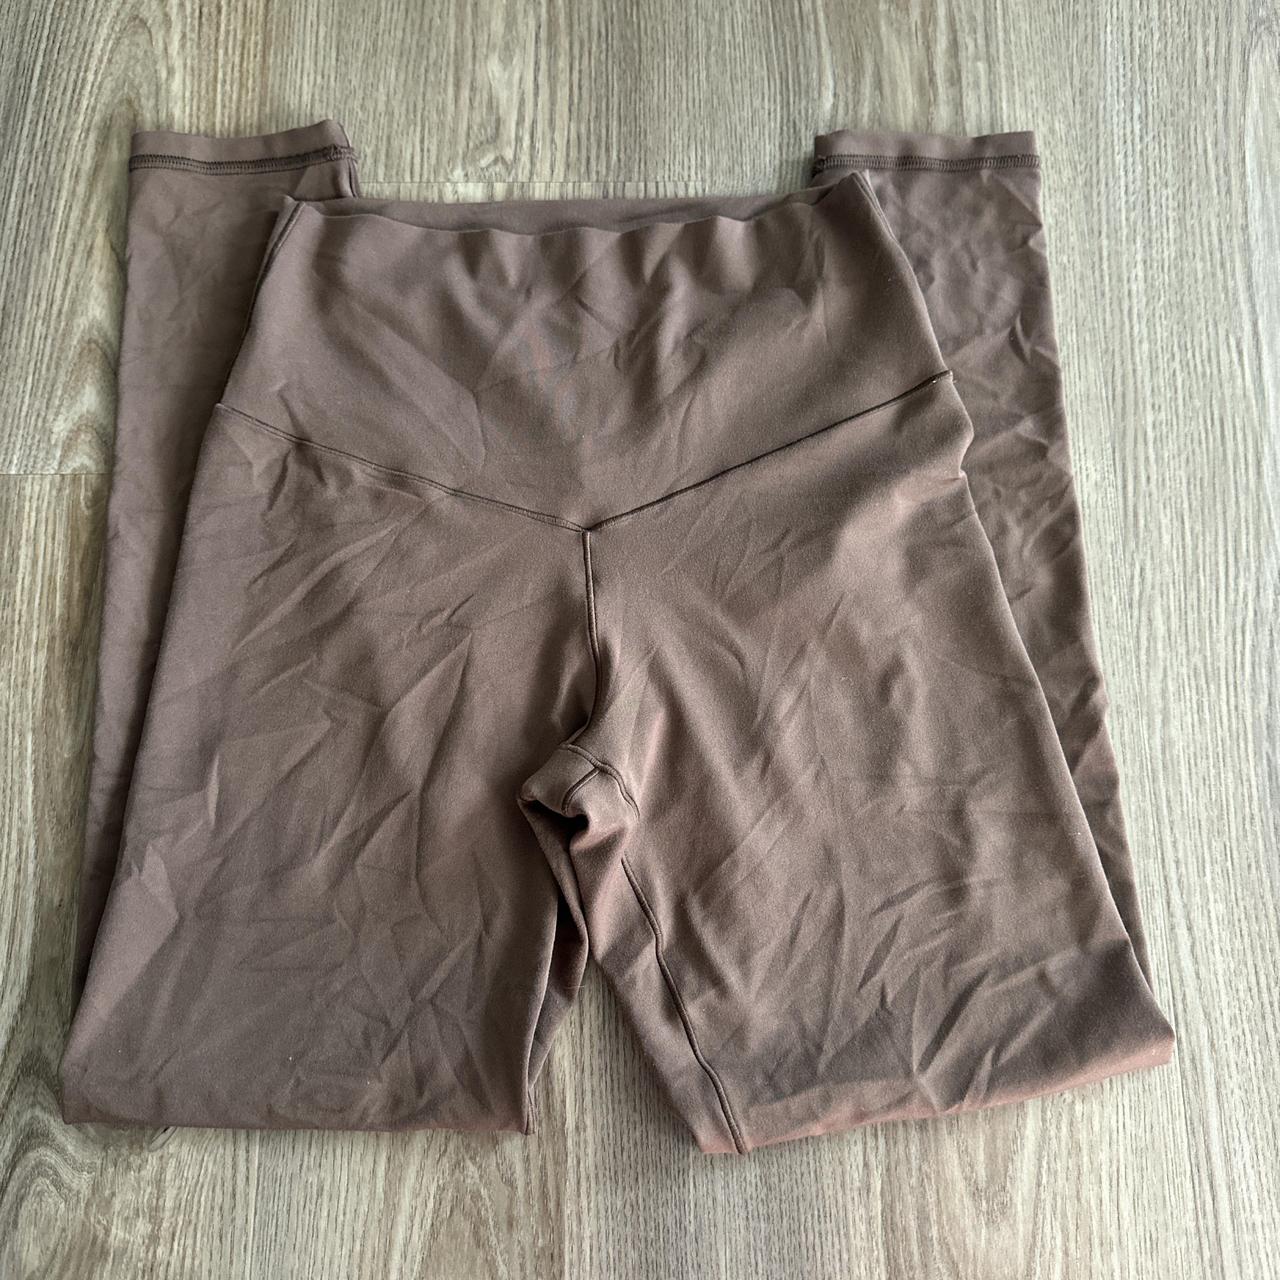 Aerie Brown Offline leggings